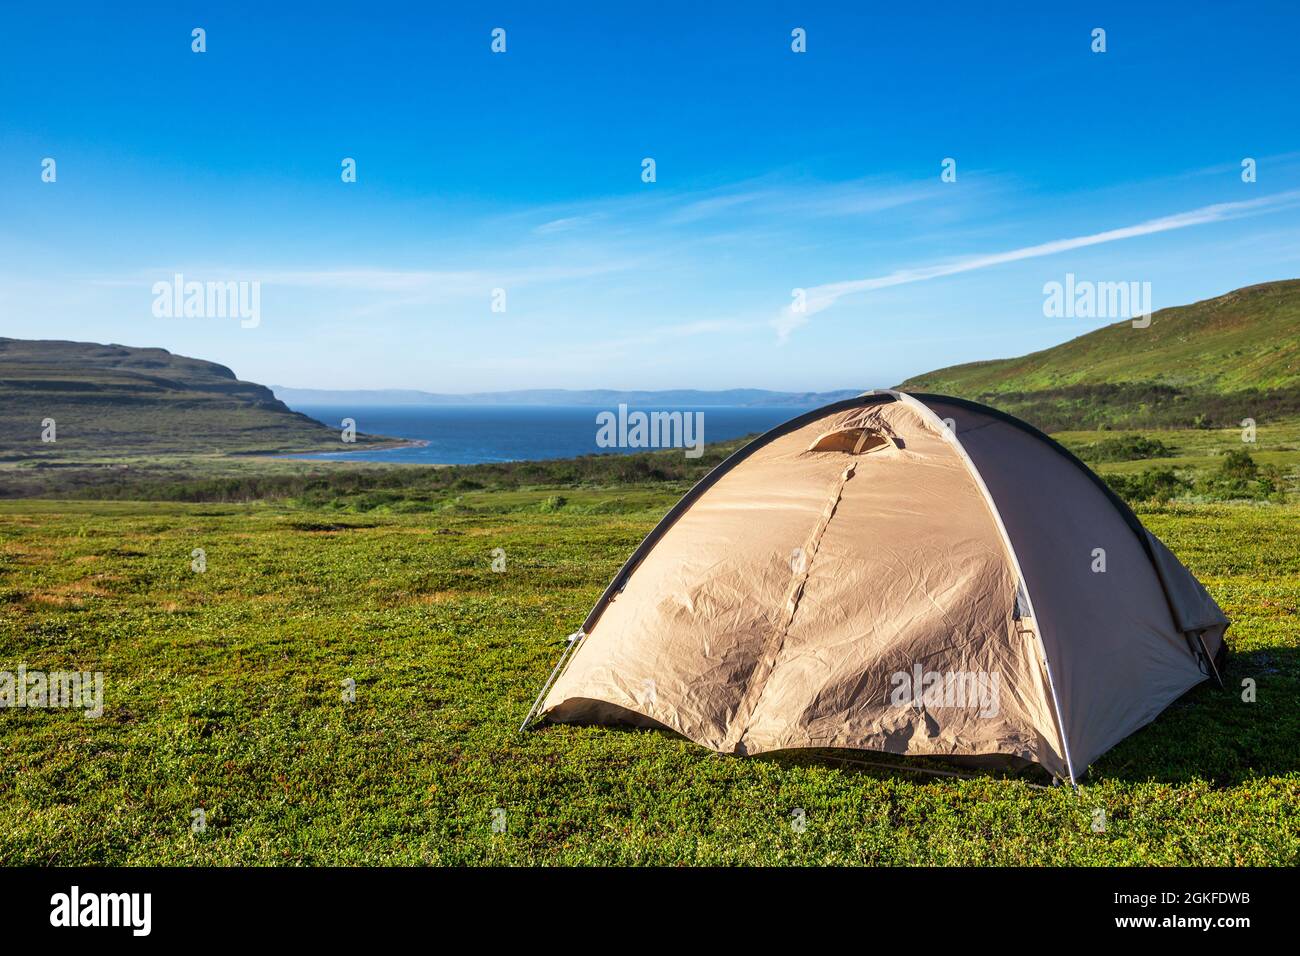 Tienda de camping en camping escénico en la costa del Océano Ártico con cordillera en el fondo - concepto de camping salvaje Foto de stock